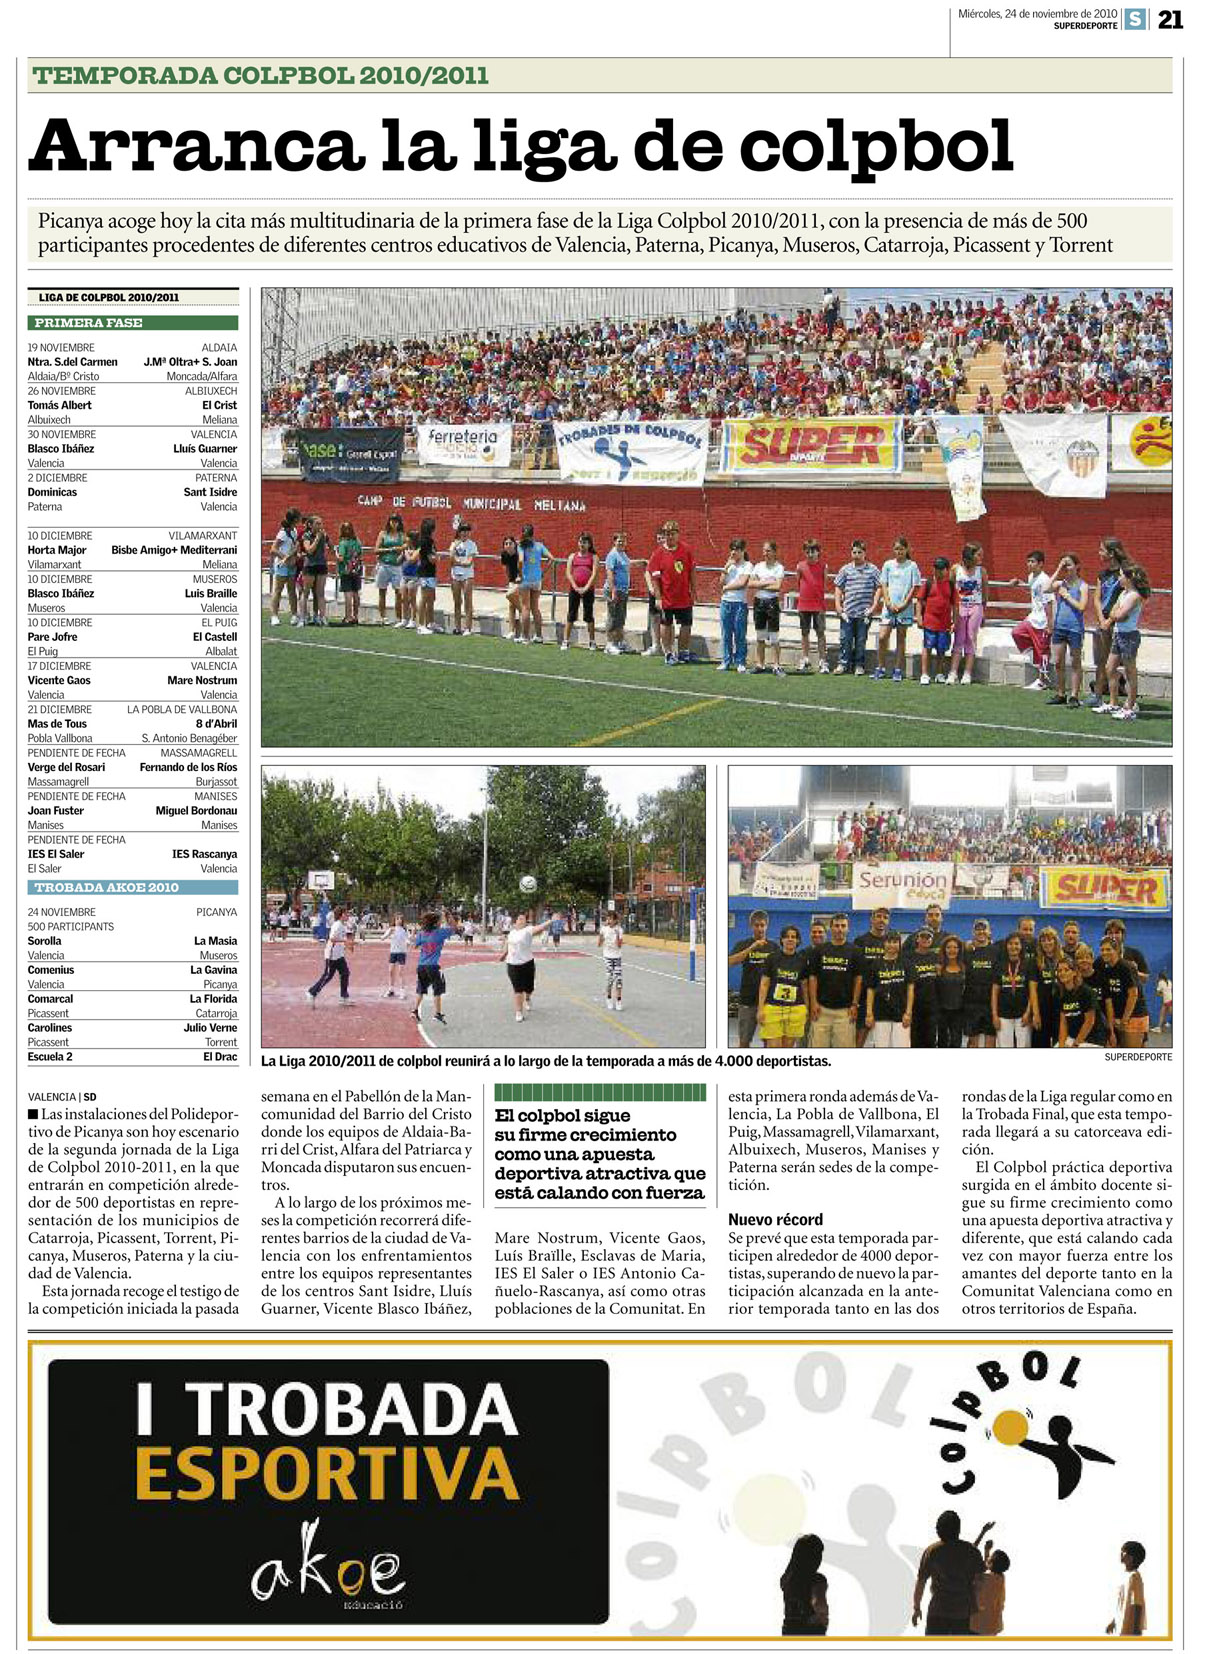 La Liga de Colpbol 2010/2011 en el diario Superdeporte